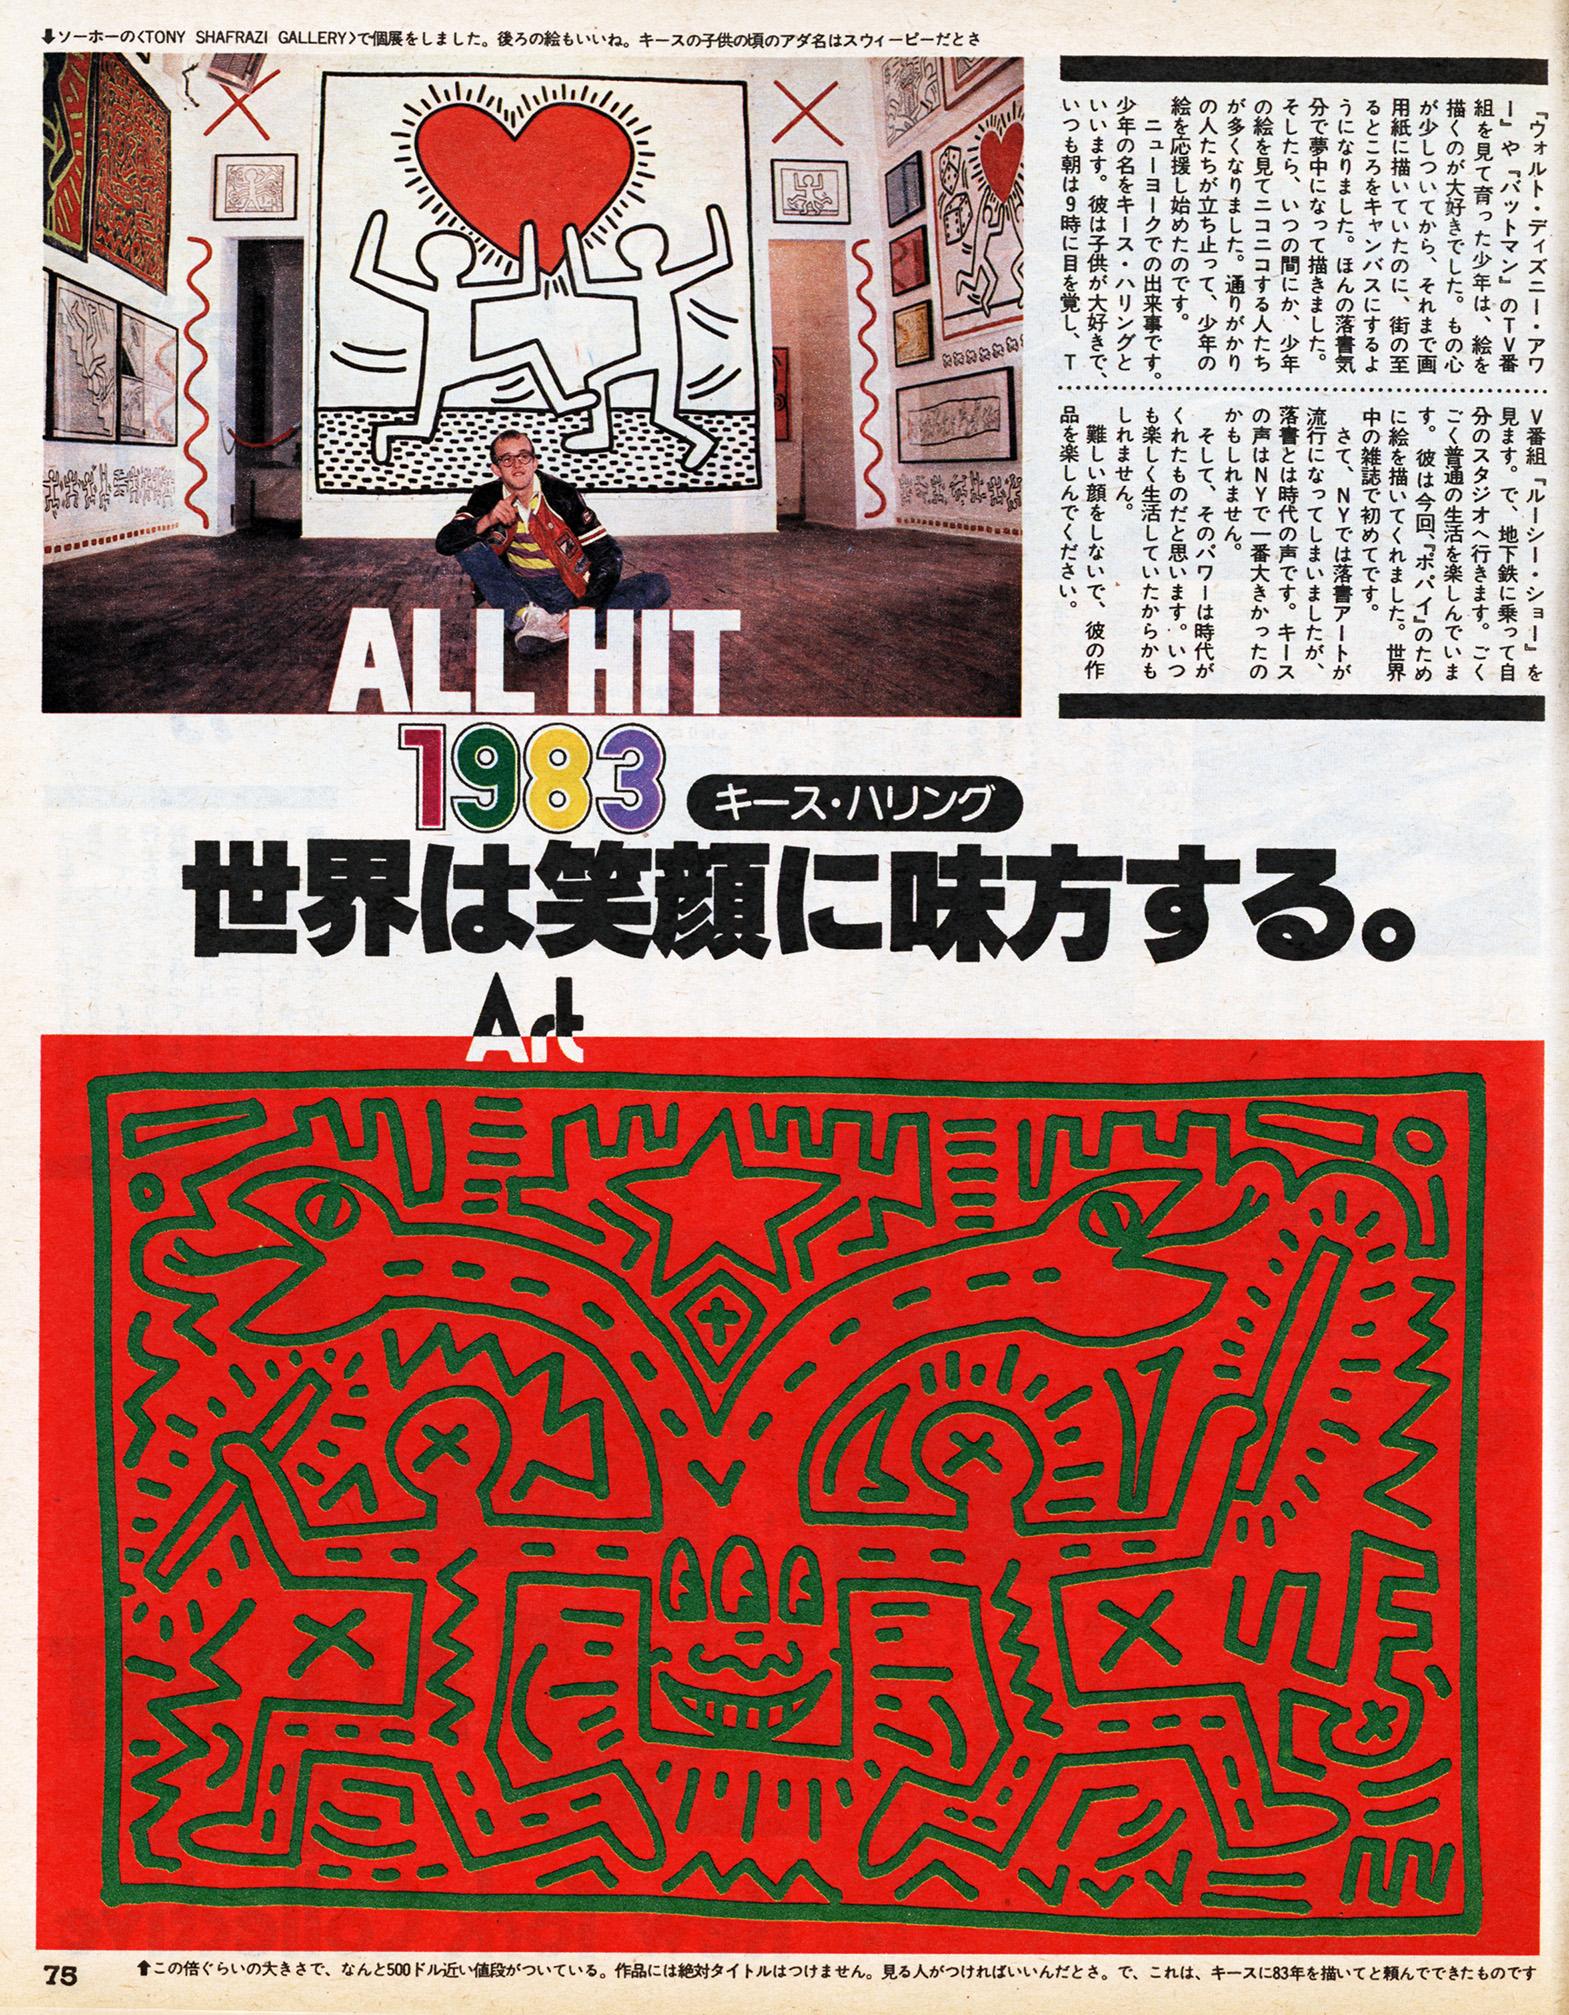 Keith Haring drawing 1982 (Keith Haring 1982 drawing) For Sale 5